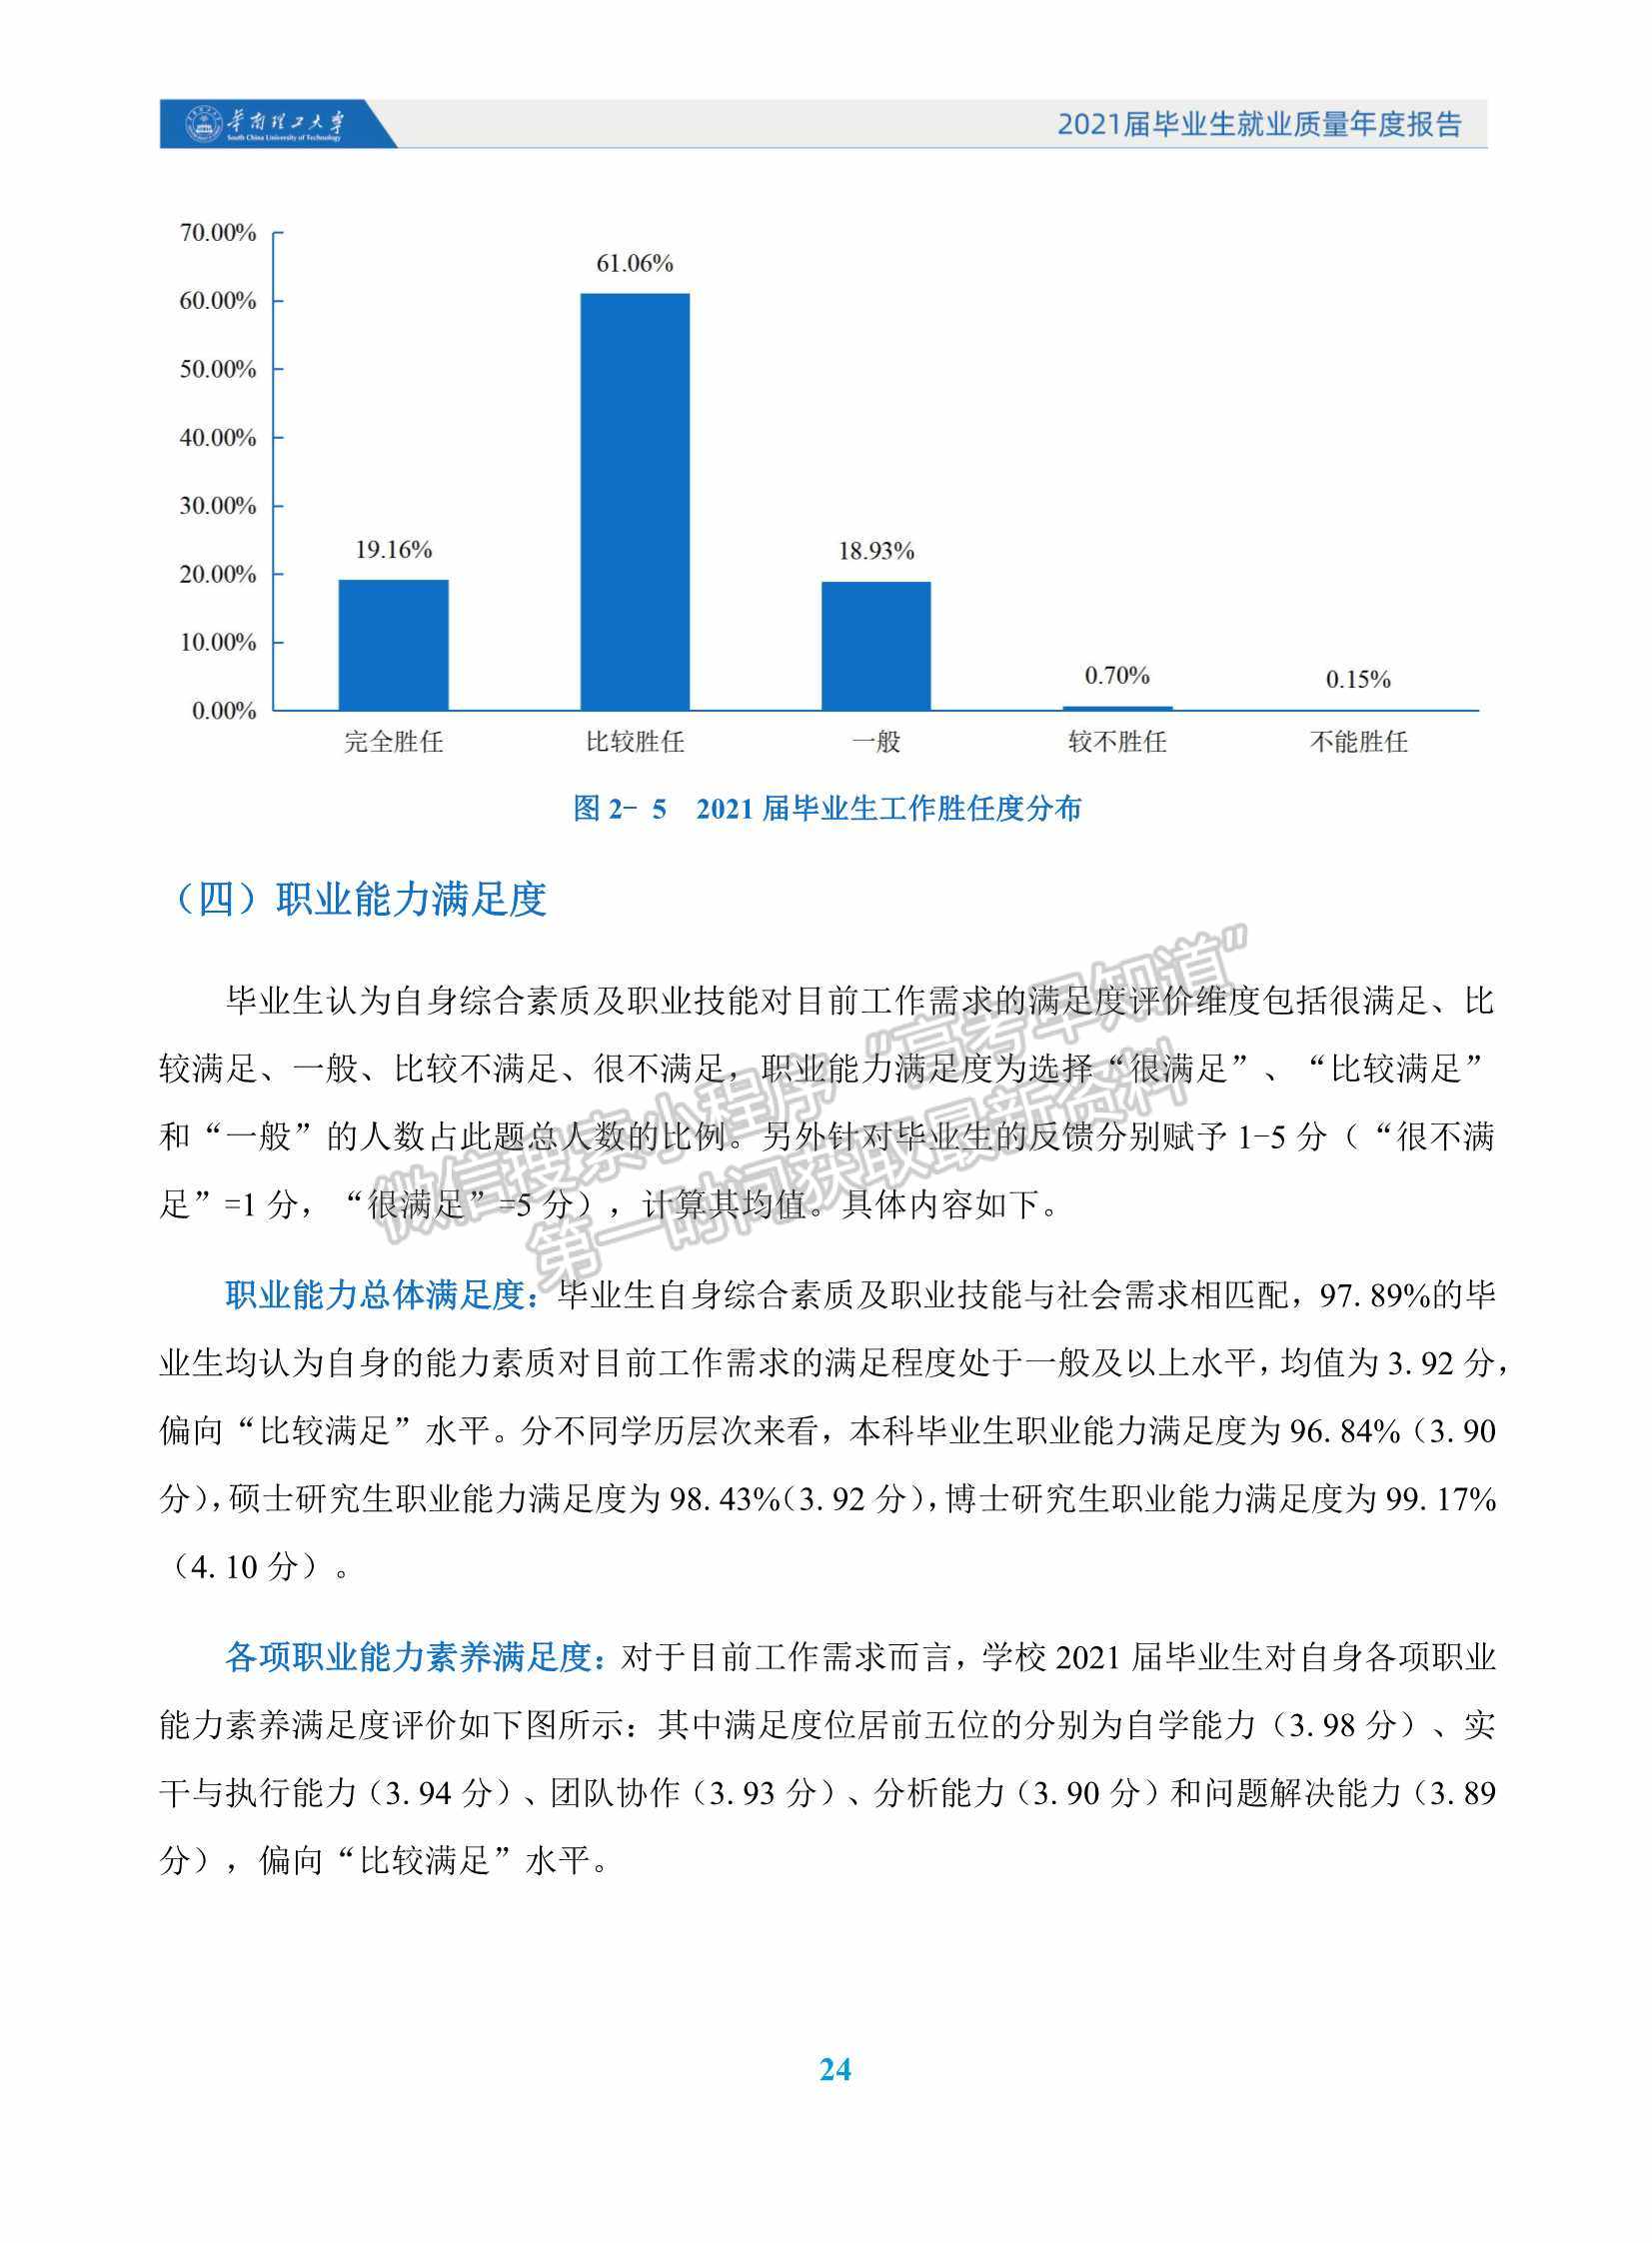 华南理工大学2021届毕业生就业质量年度报告